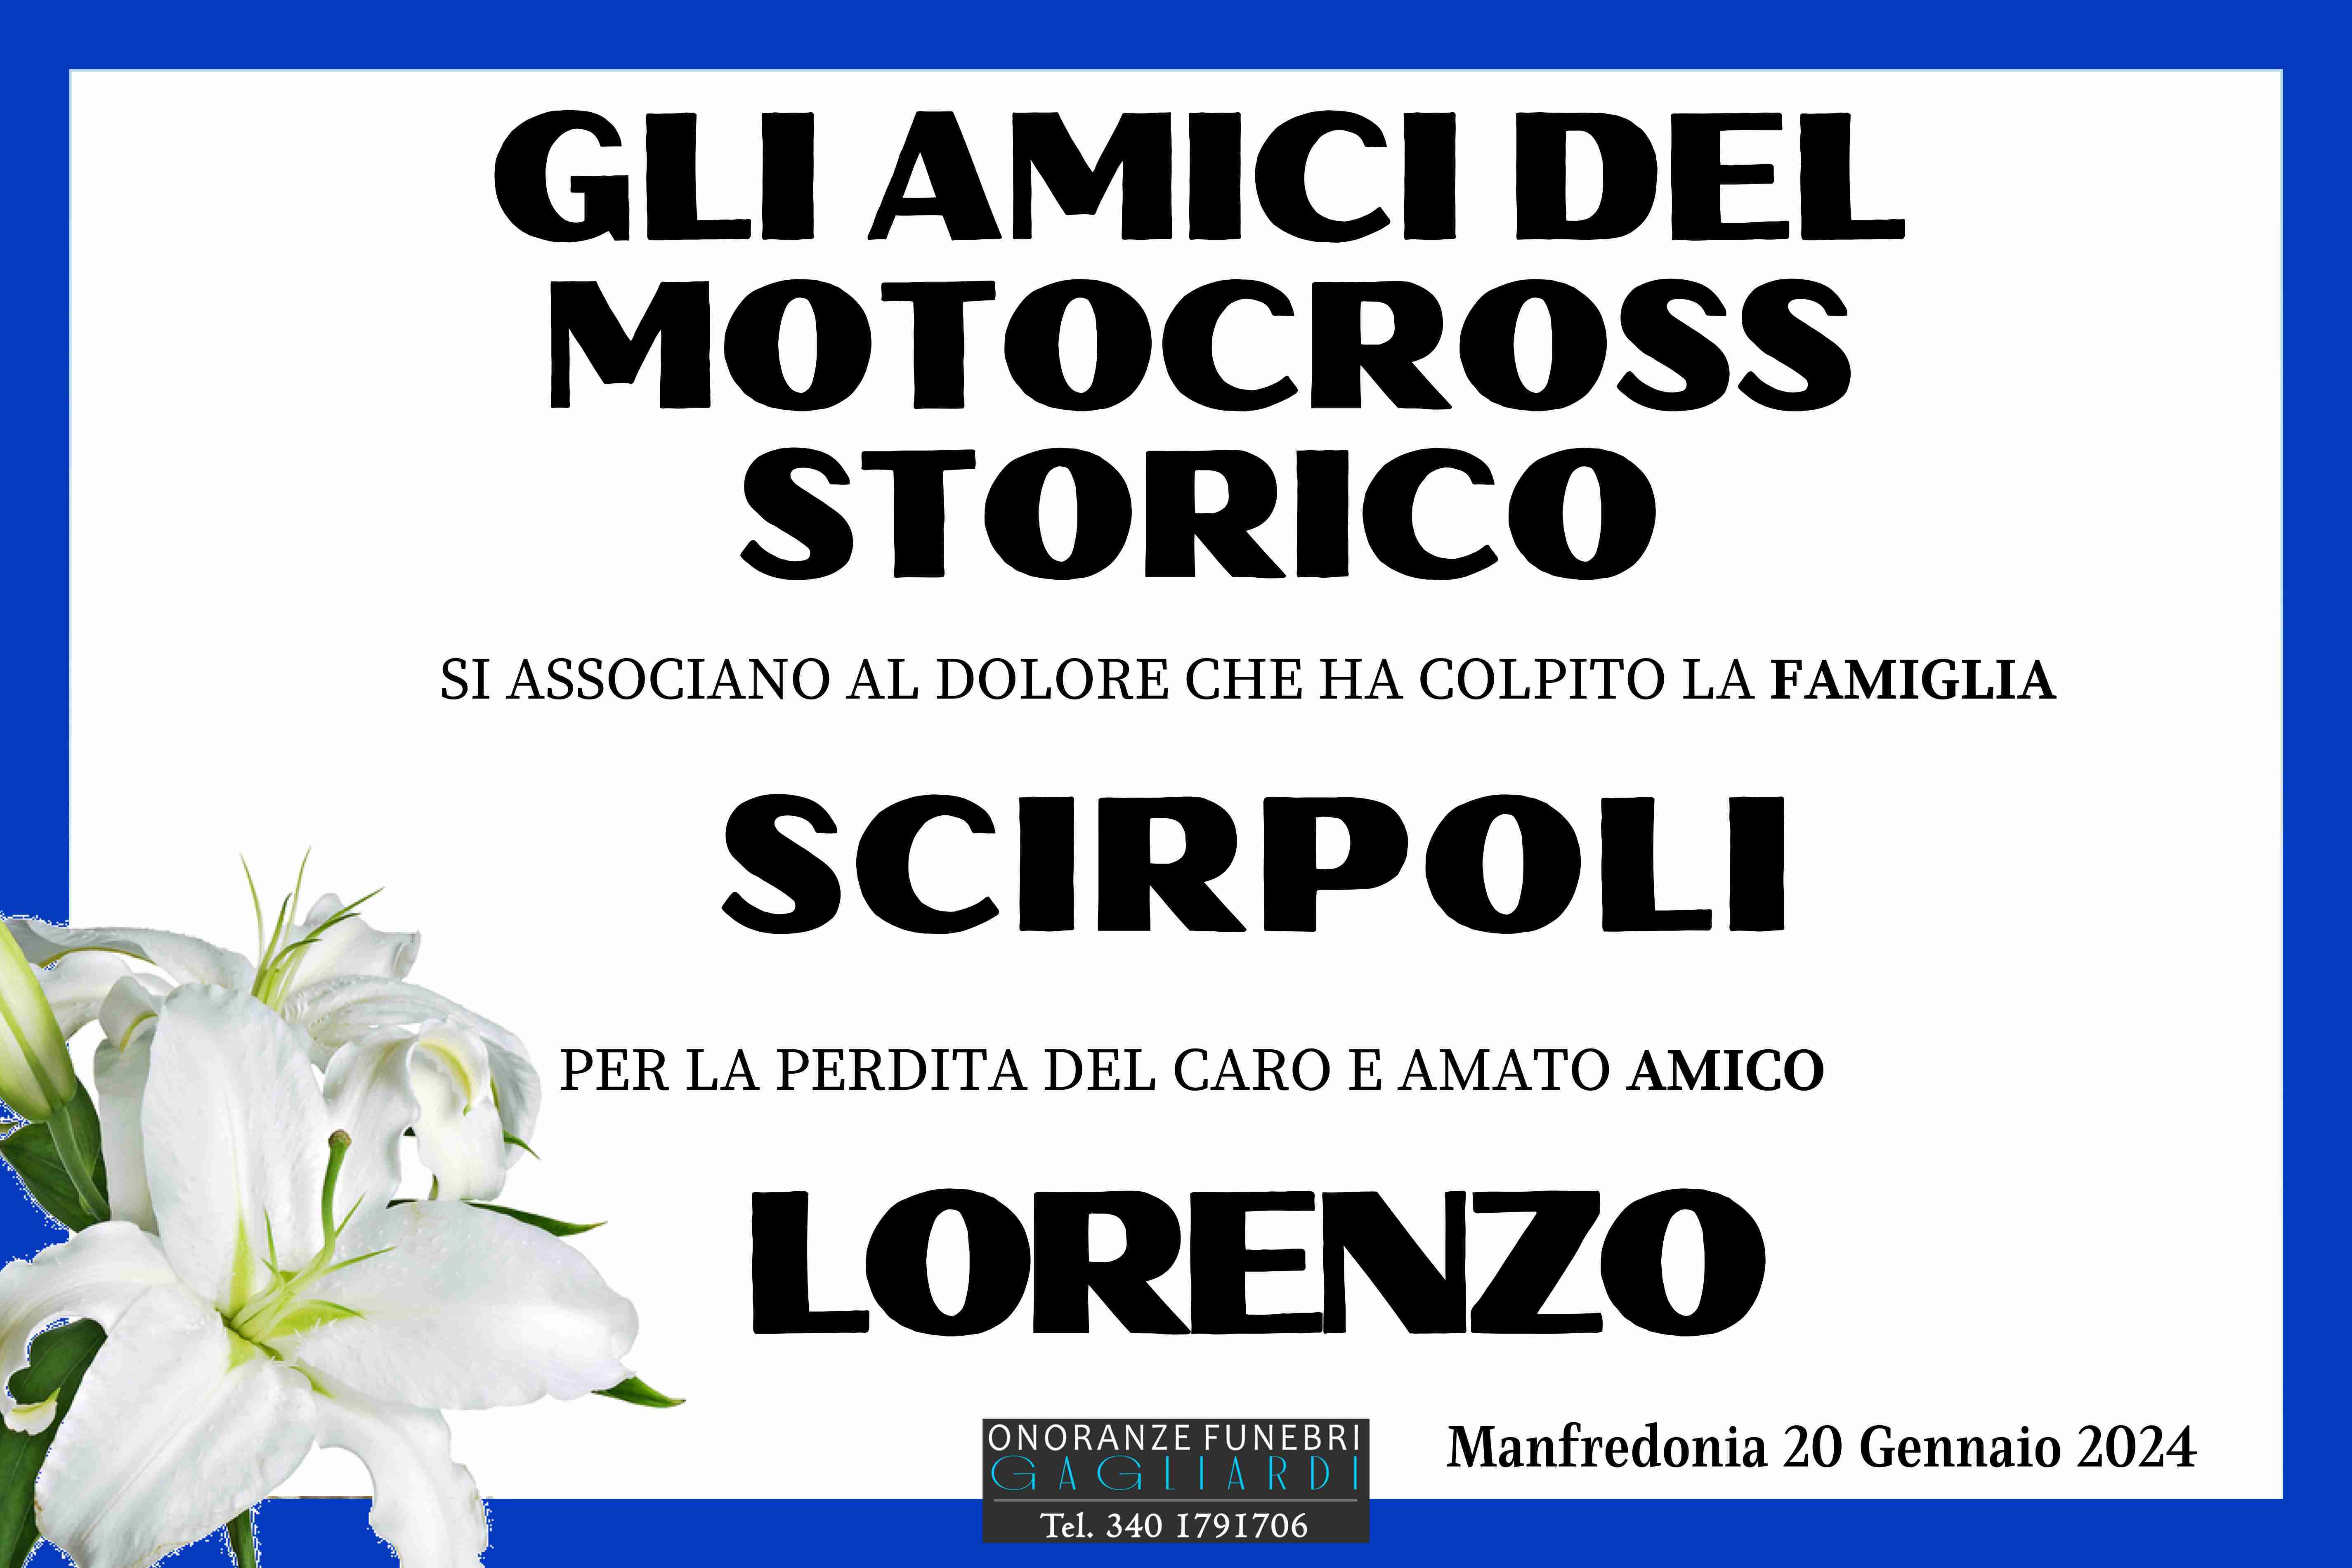 Lorenzo Scirpoli